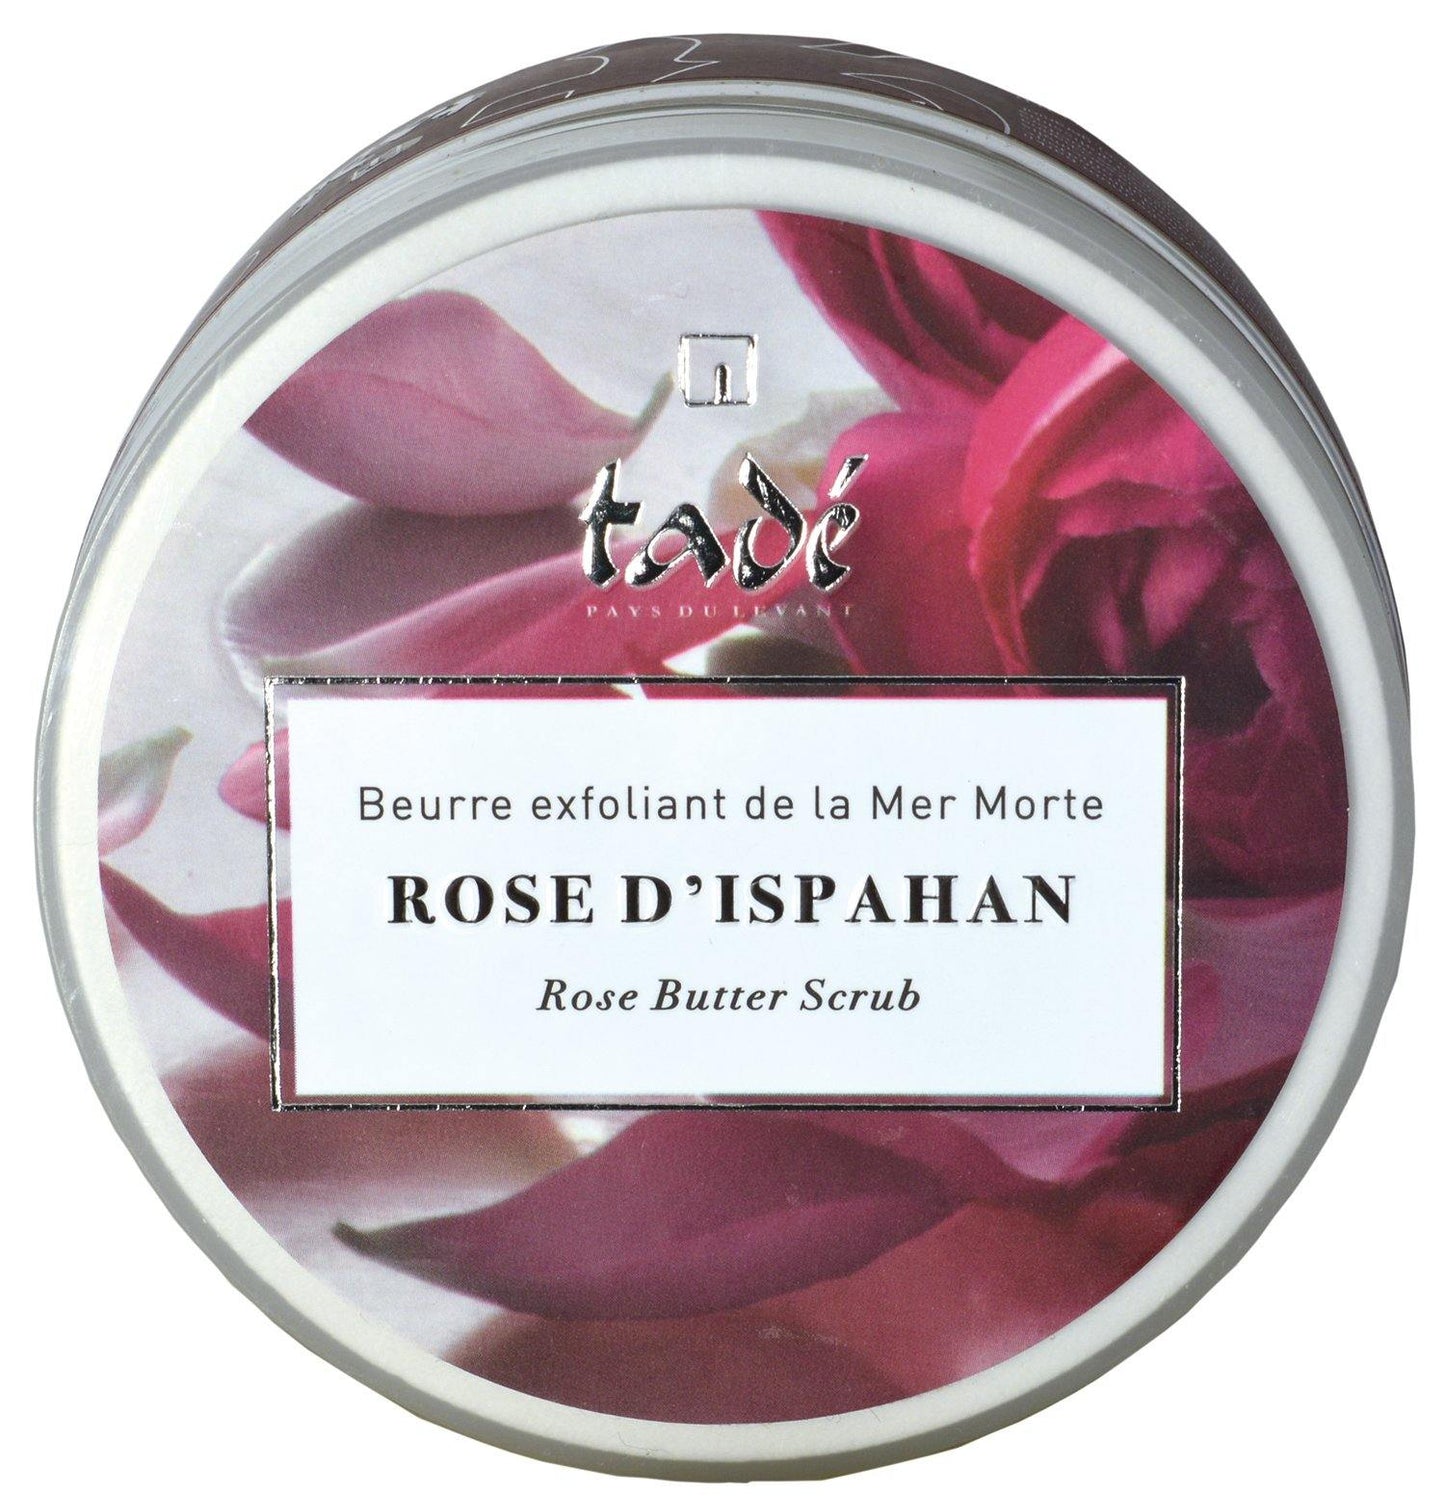 天然玫瑰死海鹽身體磨砂膏 250ml - L’Rosace